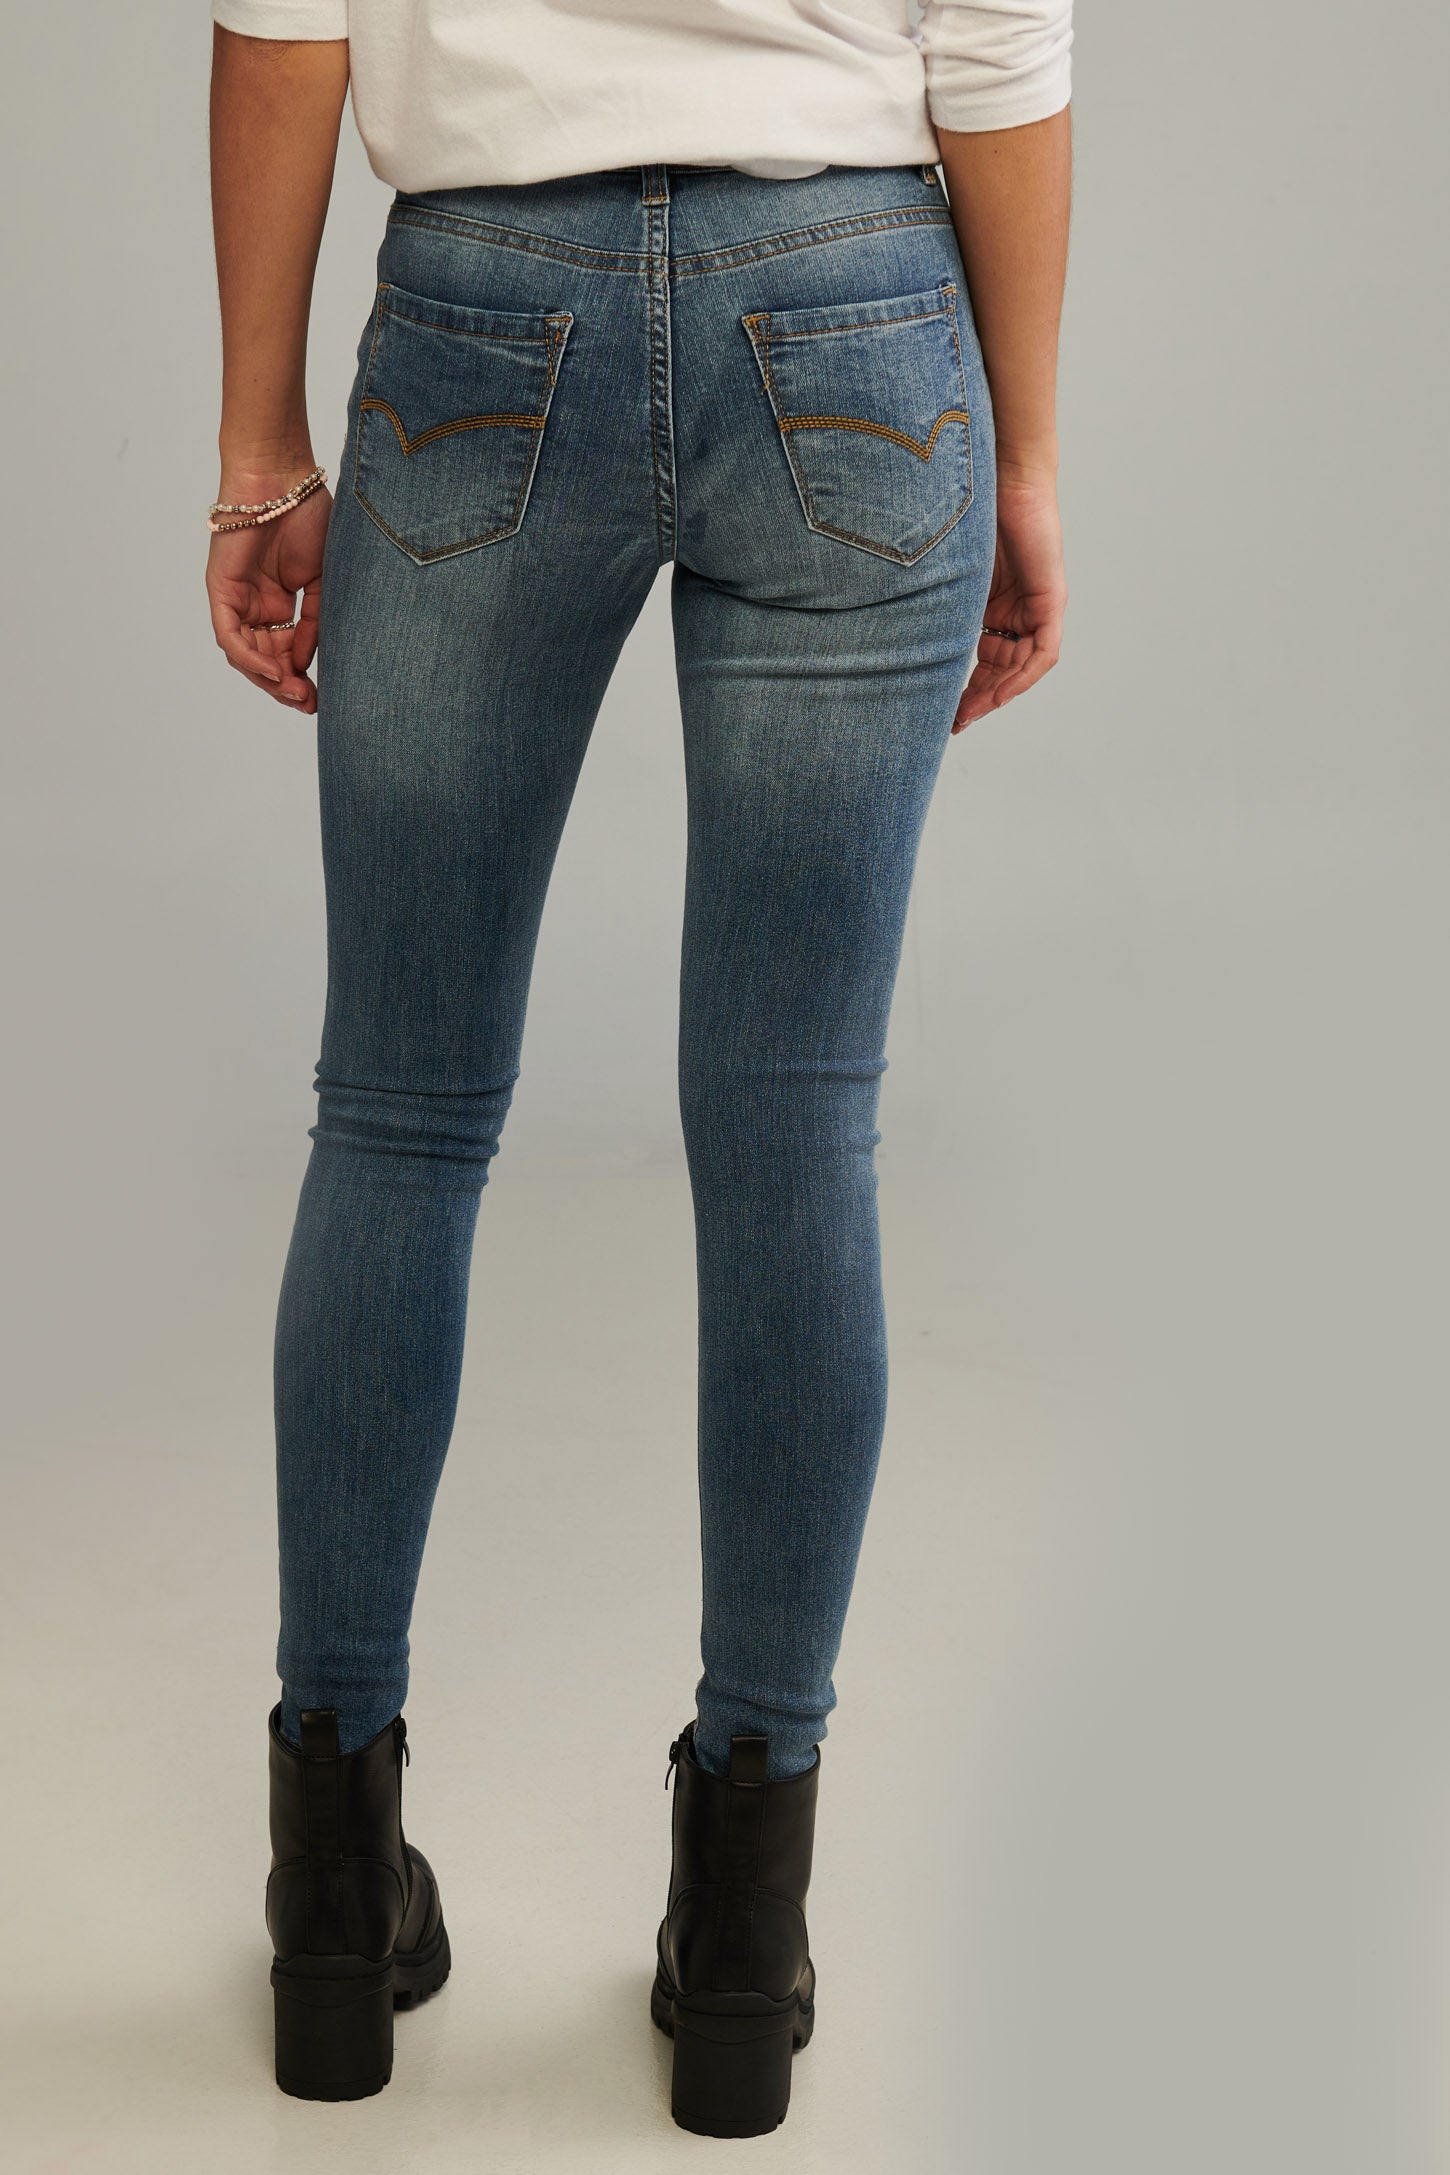 Jeans taille régulière, coupe ajustée - Femme && DENIM MOYEN